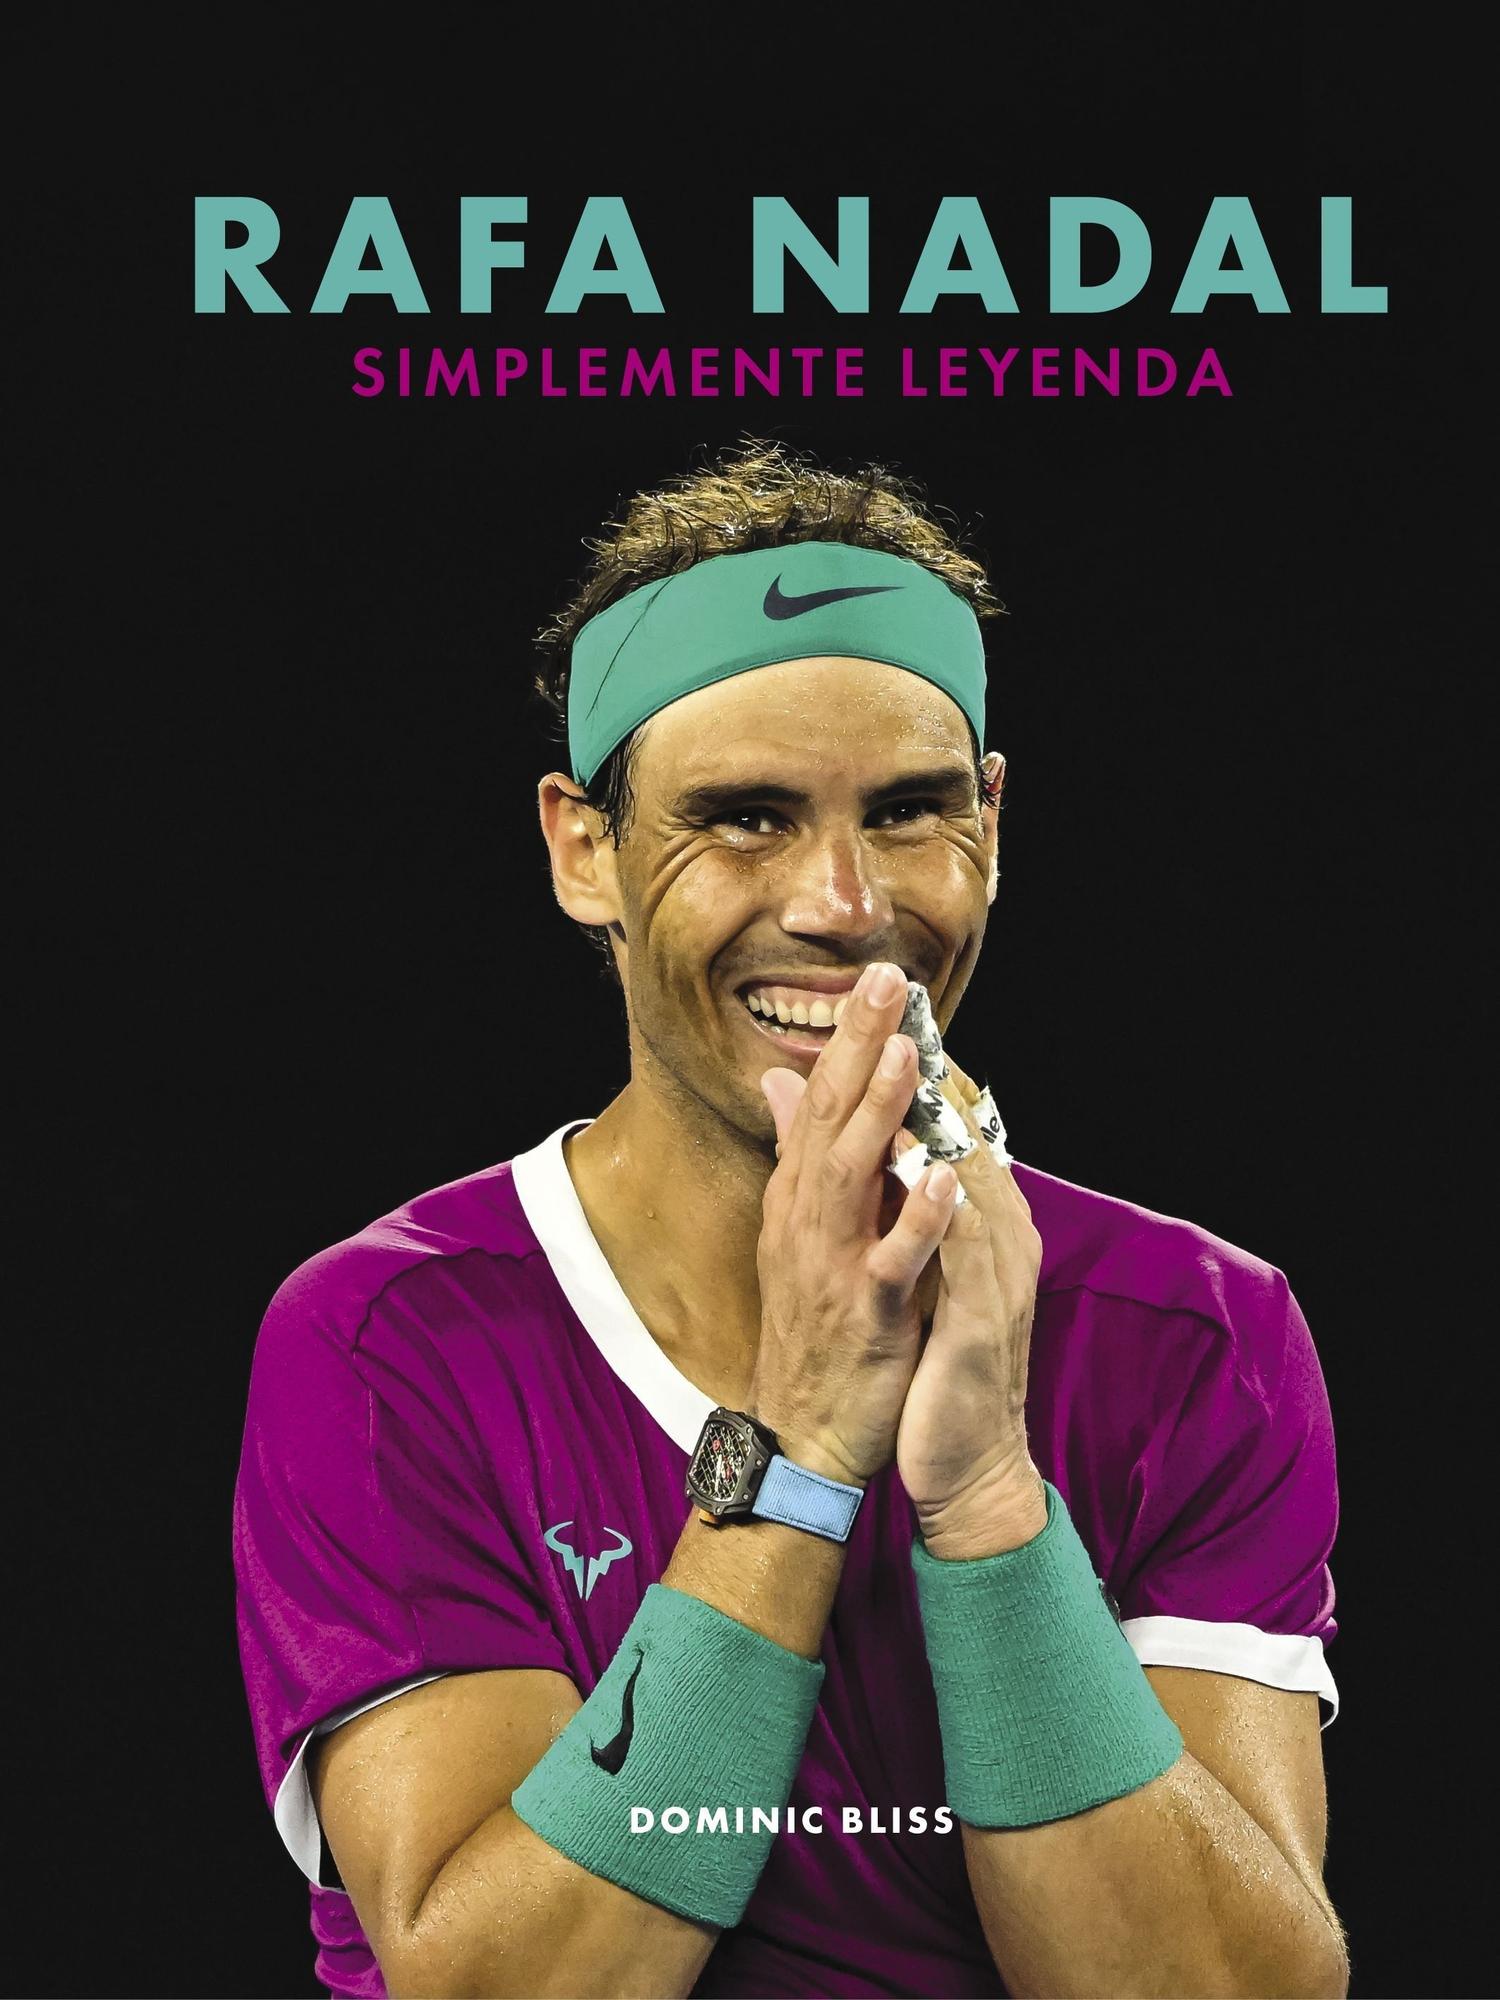 Rafa Nadal, simplemente leyenda, una biografía ilustrada de un tenista mítico.